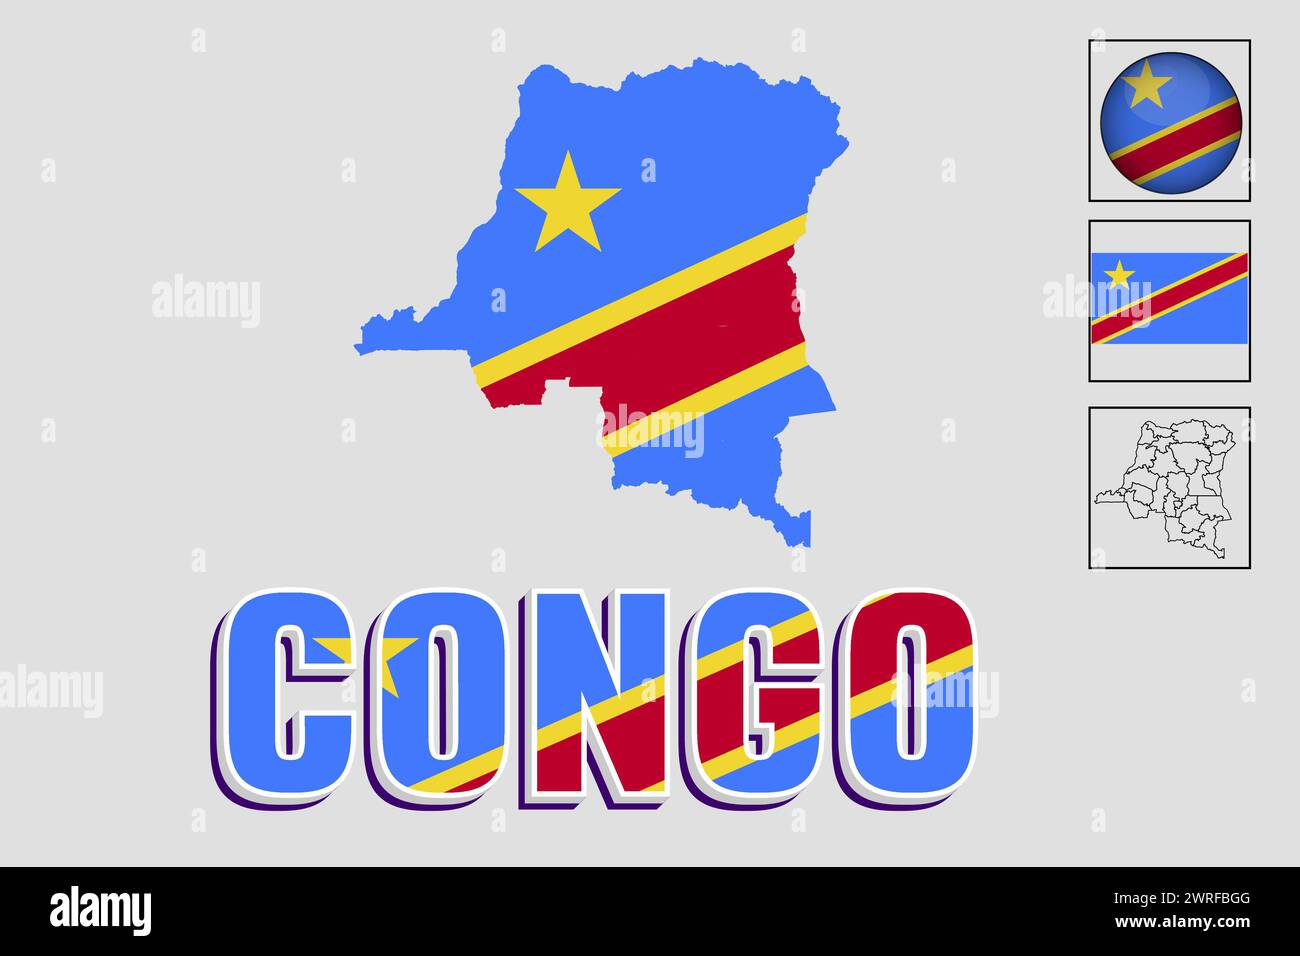 Drapeau et carte du Congo en illustration vectorielle Illustration de Vecteur